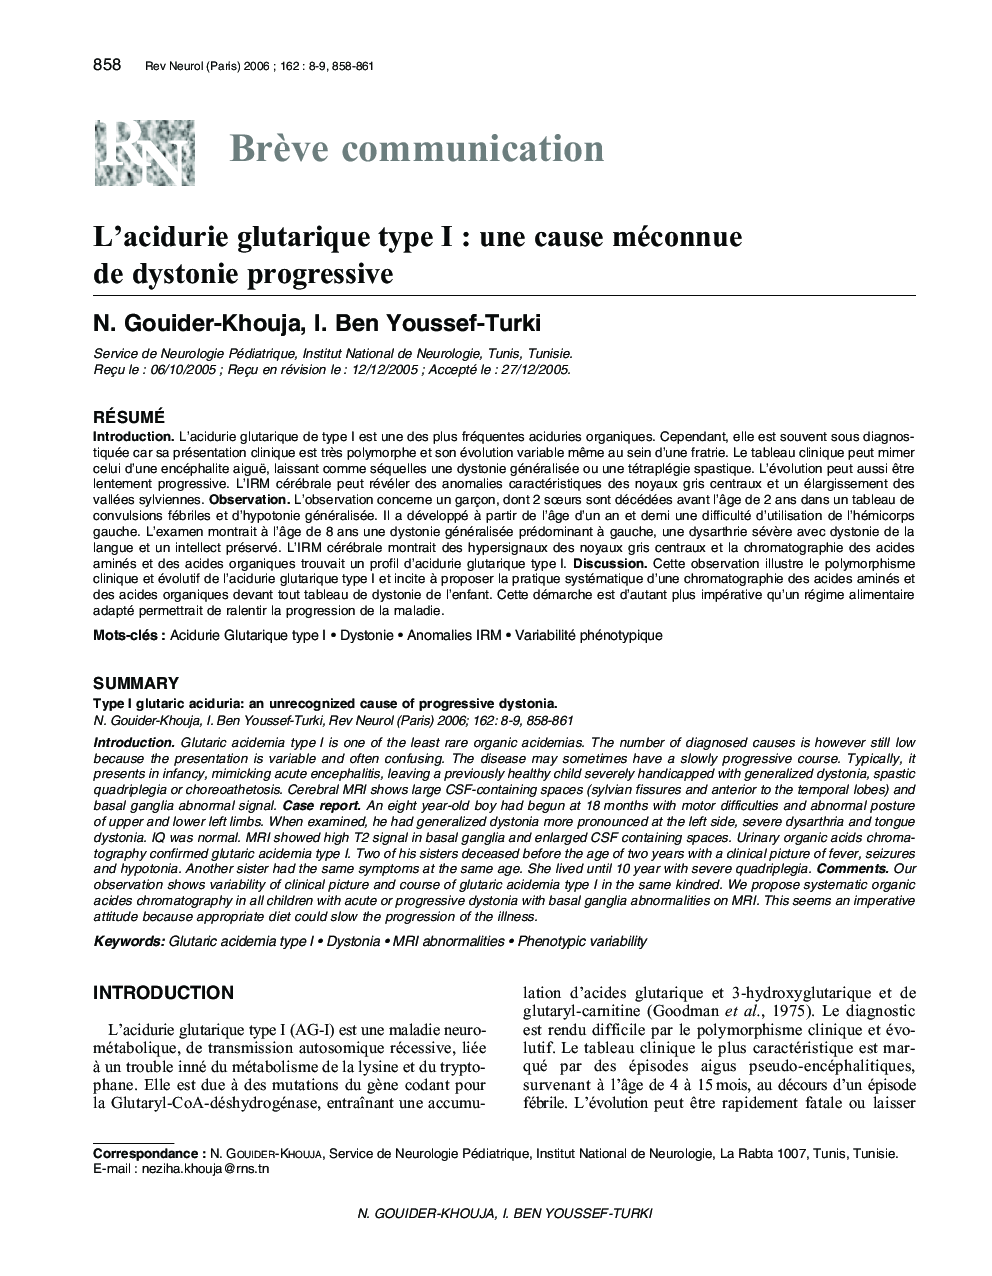 L'acidurie glutarique type I : une cause méconnue de dystonie progressive